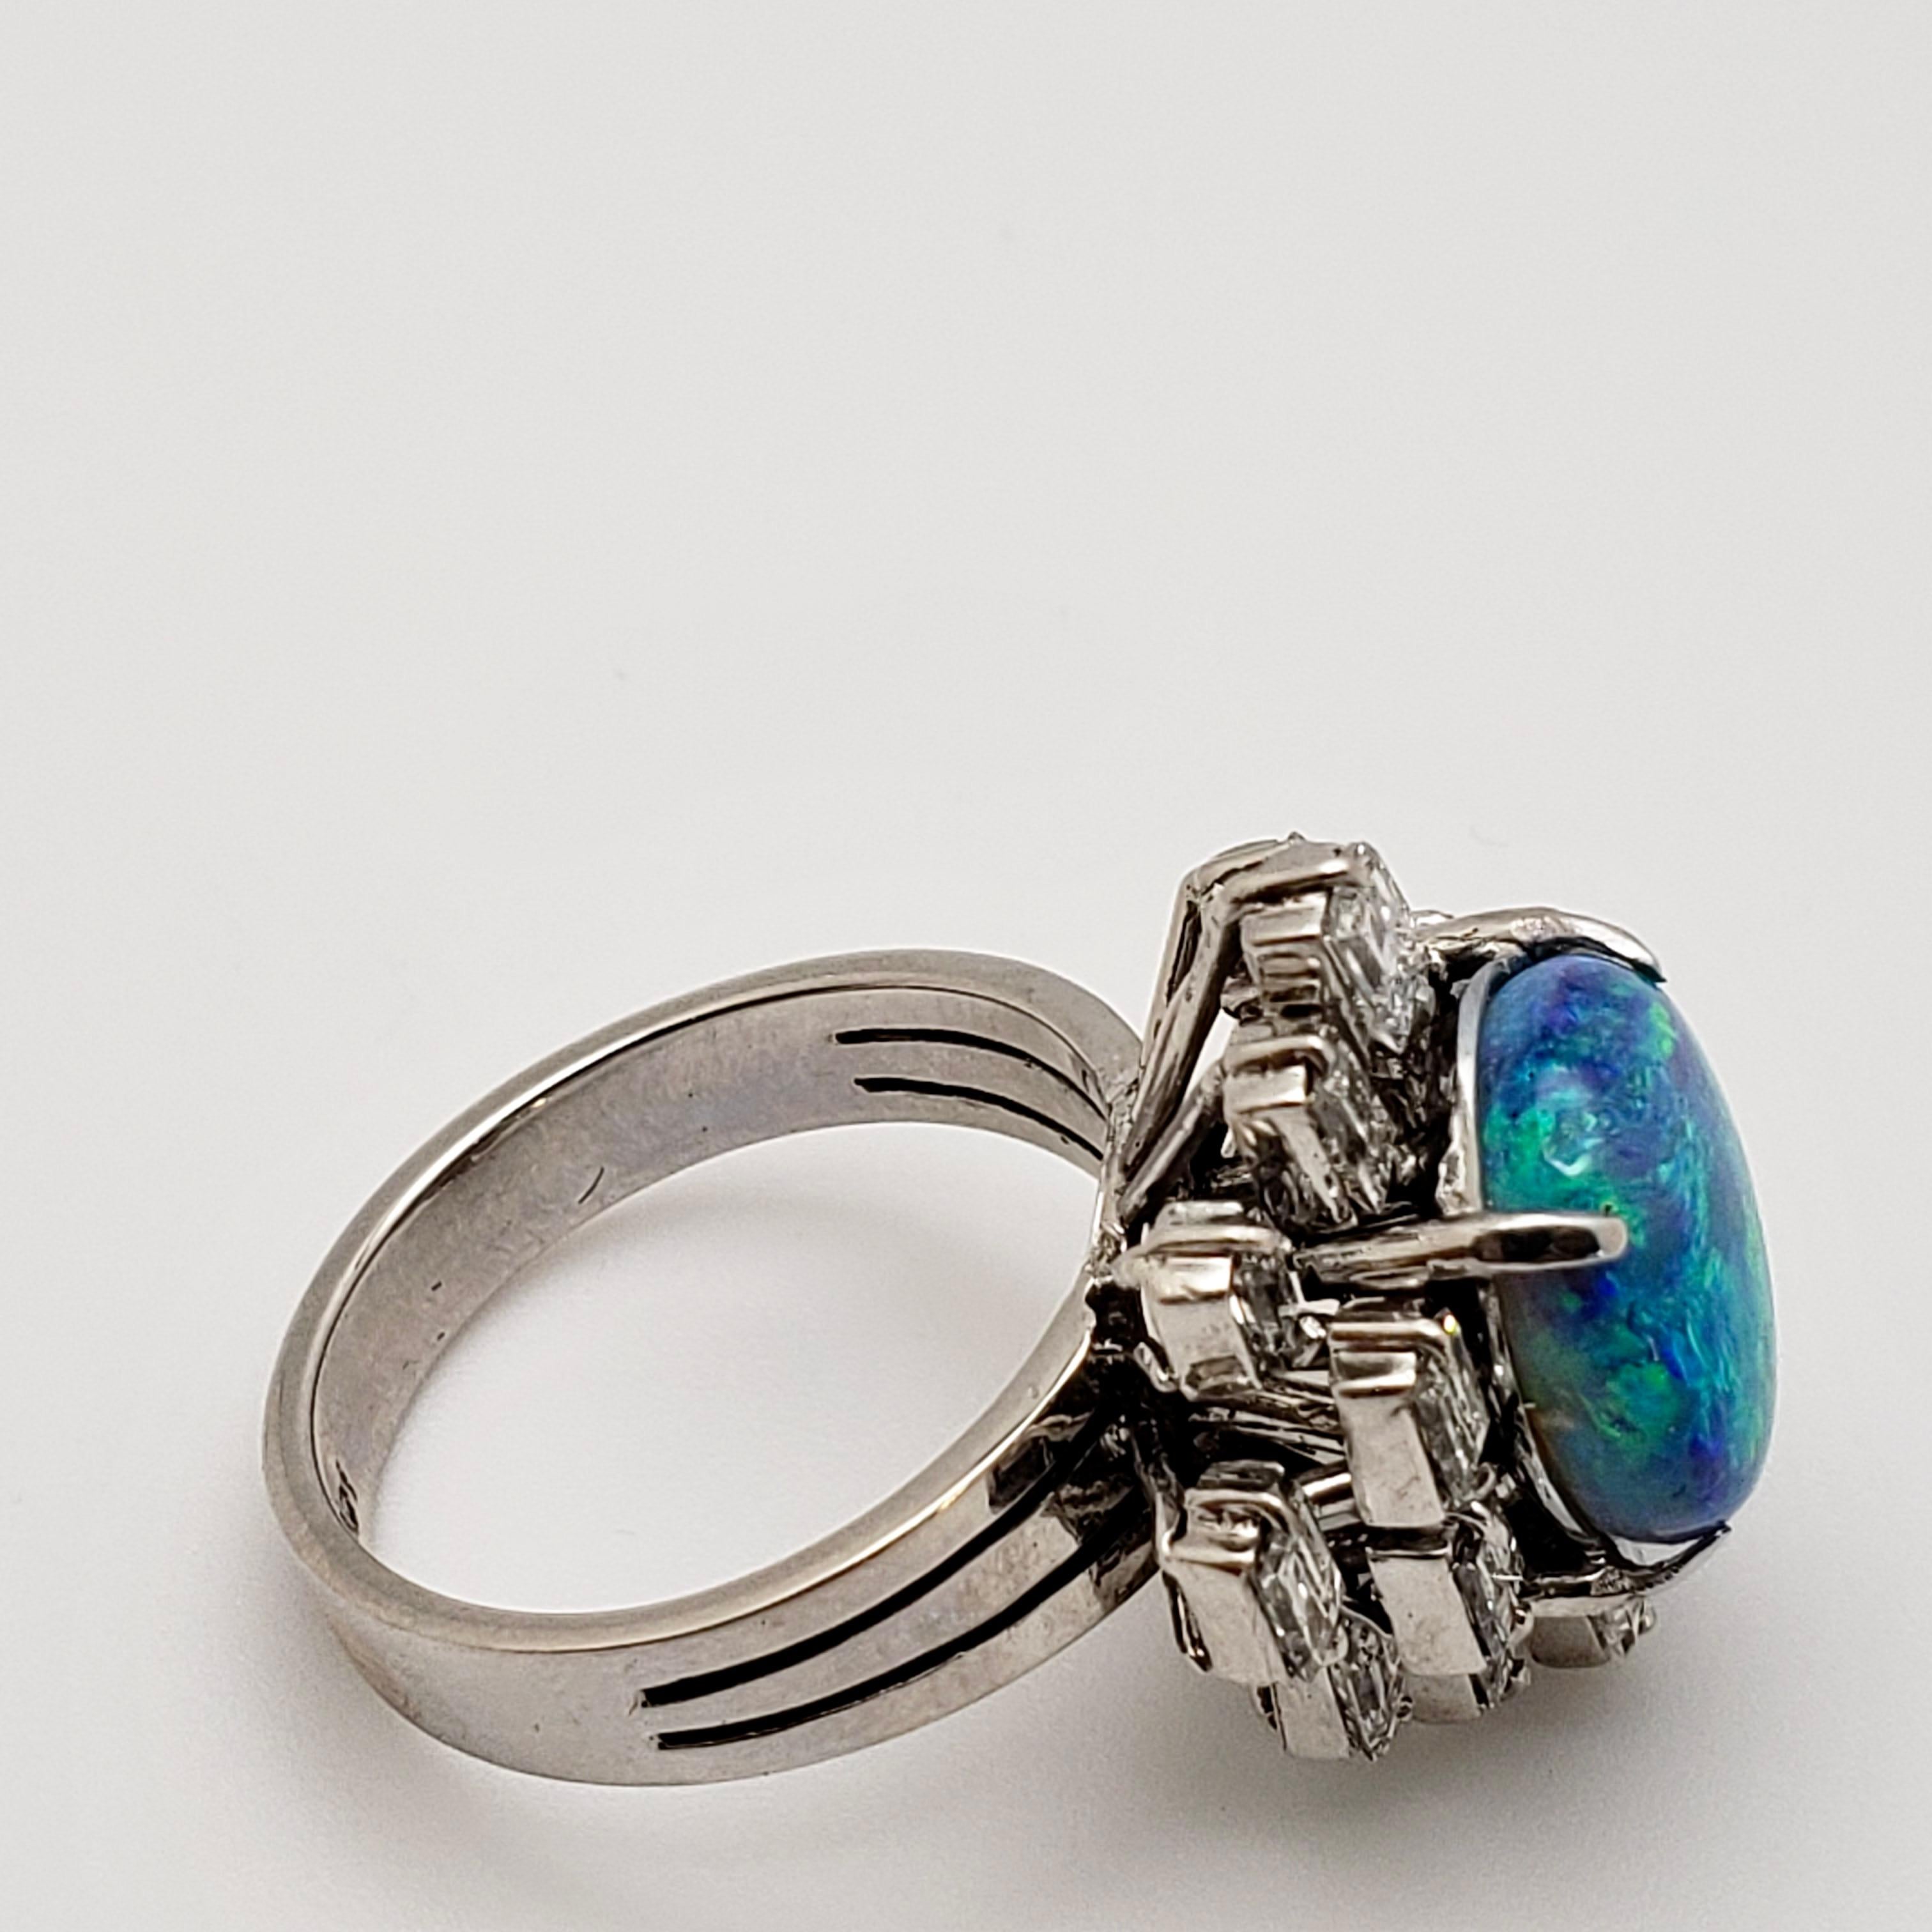 Ein majestätischer Ring aus 14 Karat Weißgold mit natürlichem Opal, begleitet von einem GIA-Zertifikat, Bericht #: 1192097284. Montiert mit einem wunderschönen grauen, ovalen 4,07-CT-Opal, der ein Farbenspiel von Blau über Grün bis hin zu Magenta